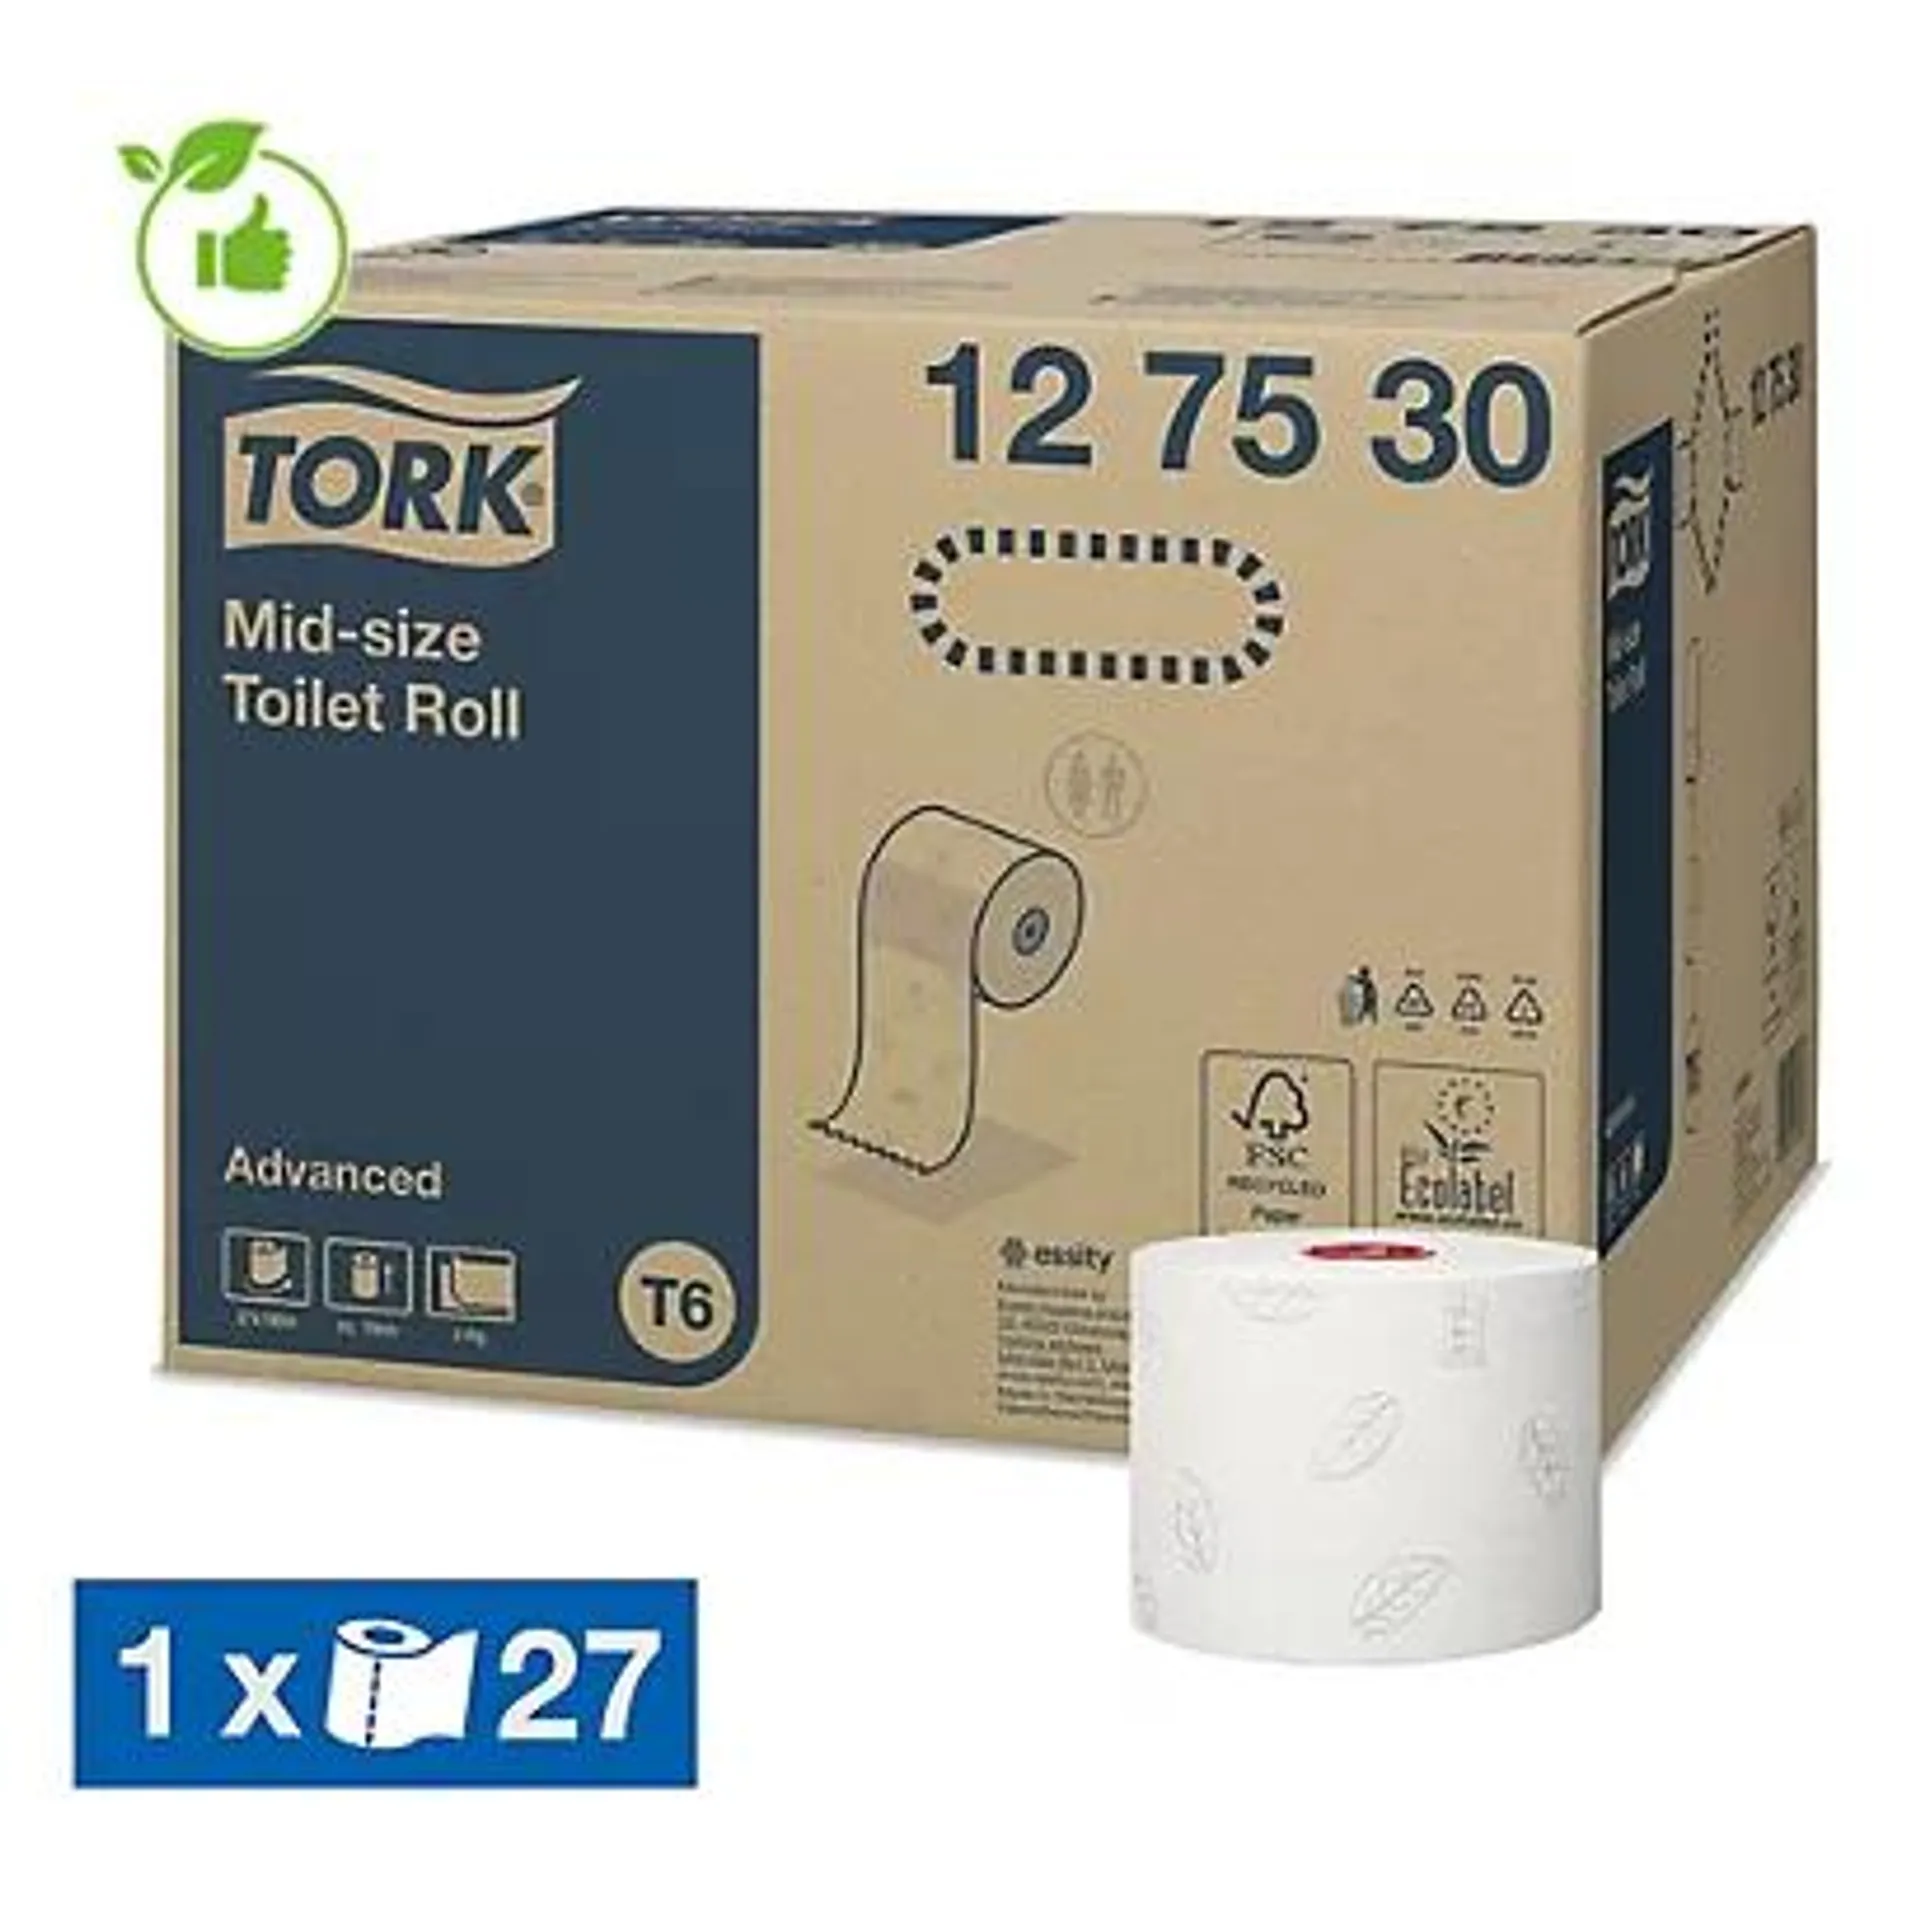 Toiletpapier Tork voor T6 dispenser 2-laags, set van 27 rollen